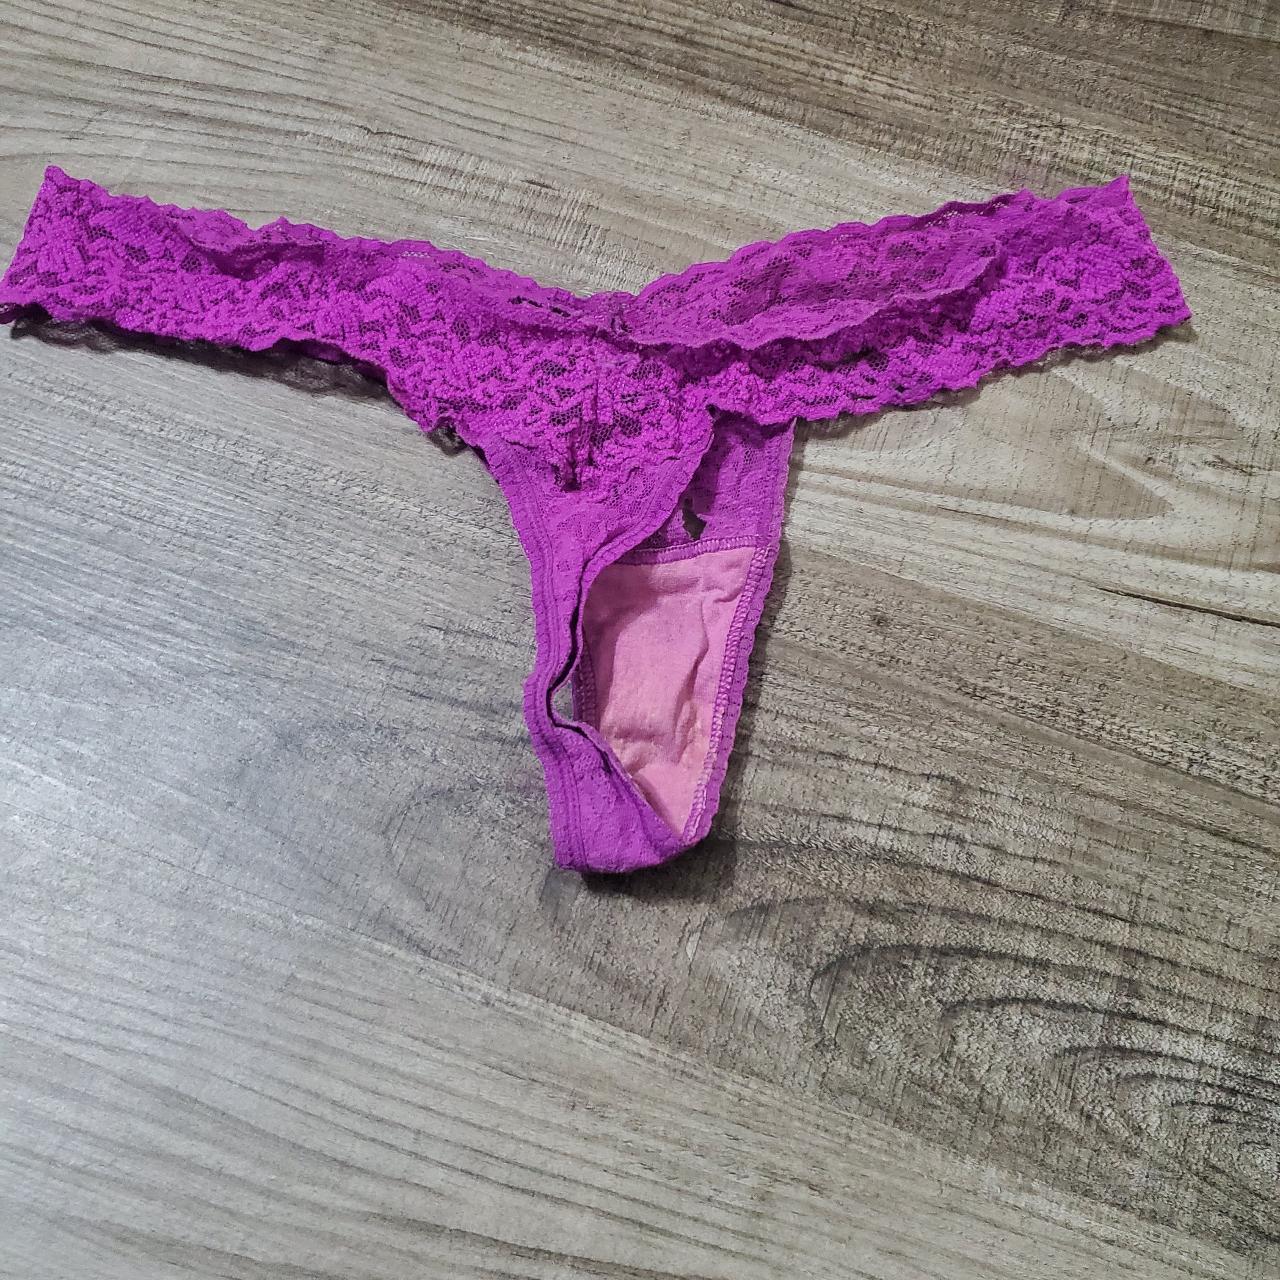 Victoria's Secret Purple Lace Thong Panty, One Size - Depop